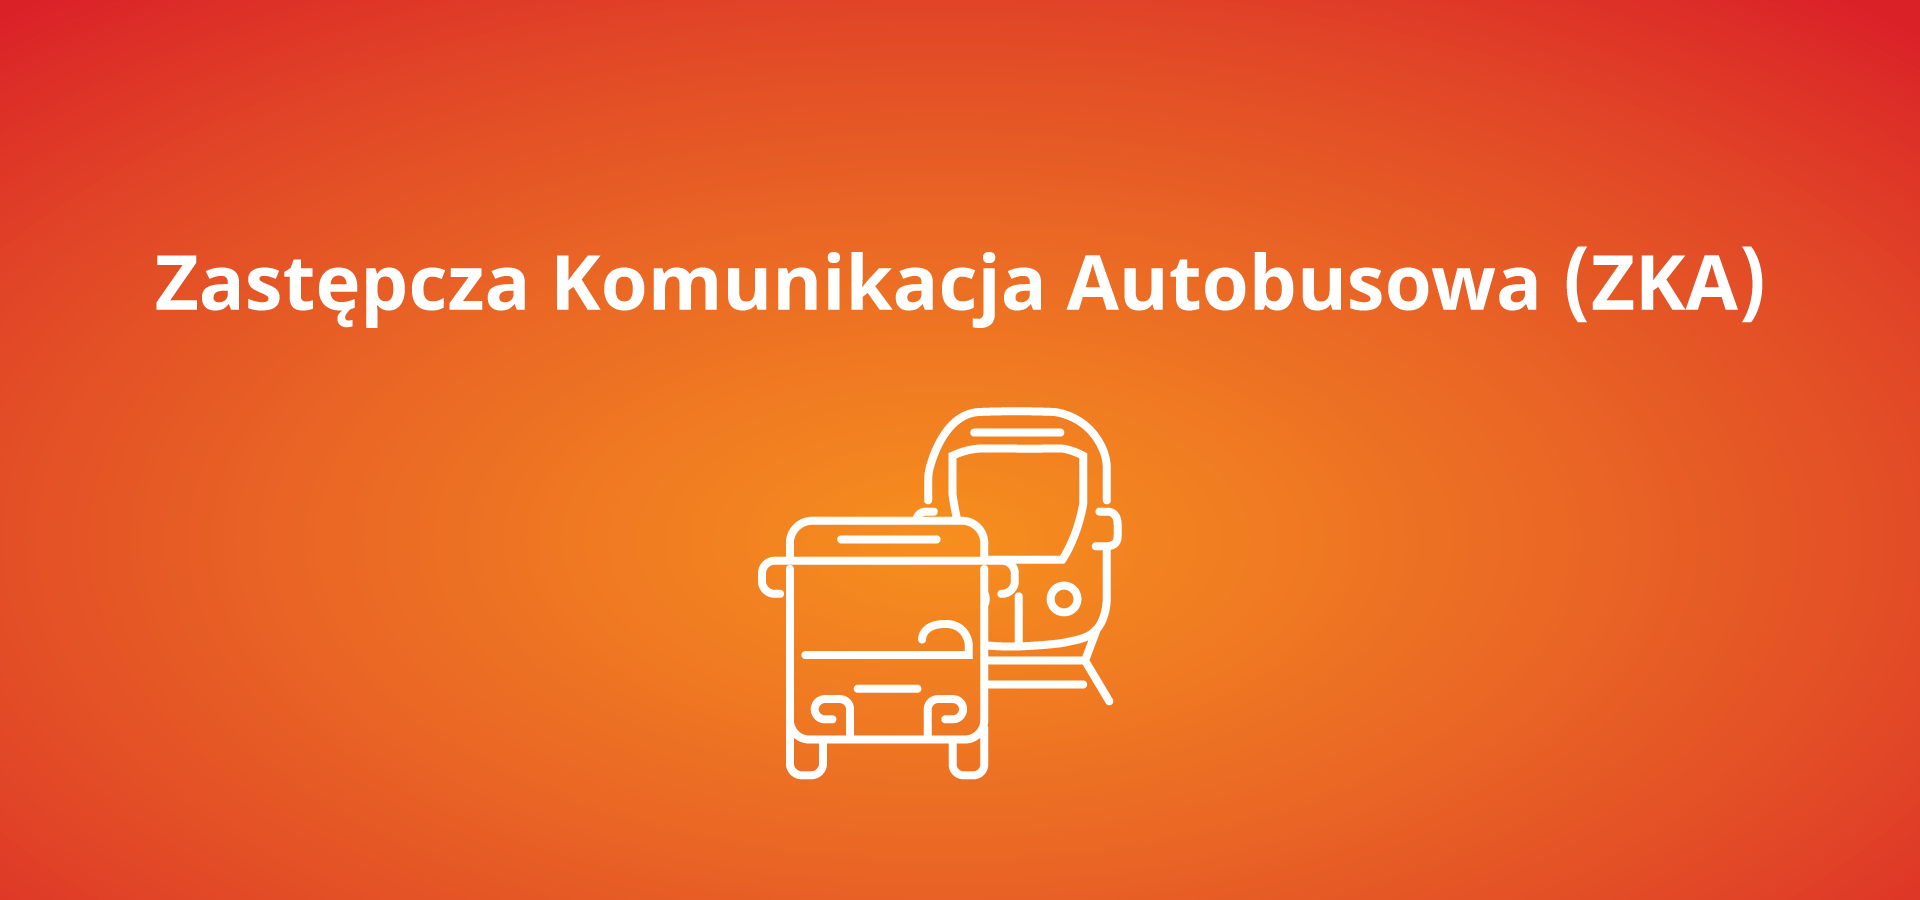 Autobusowa Komunikacja Zastępcza Skarżysko-Kamienna – Końskie - Opoczno – Tomaszów Mazowiecki 